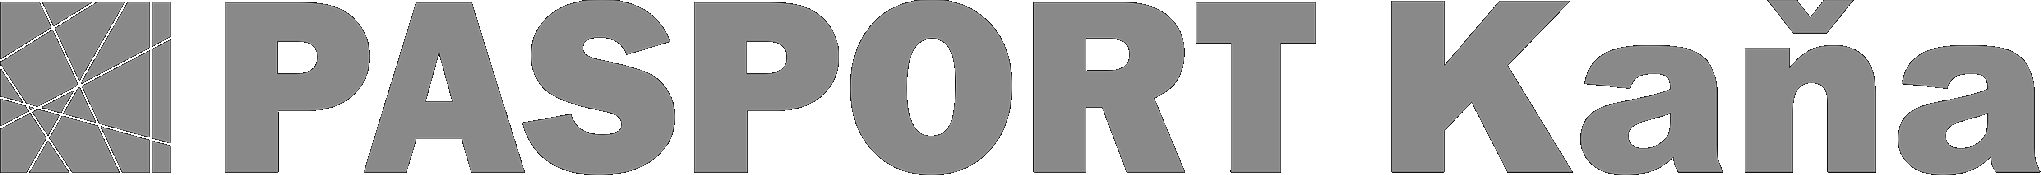 fotter logo